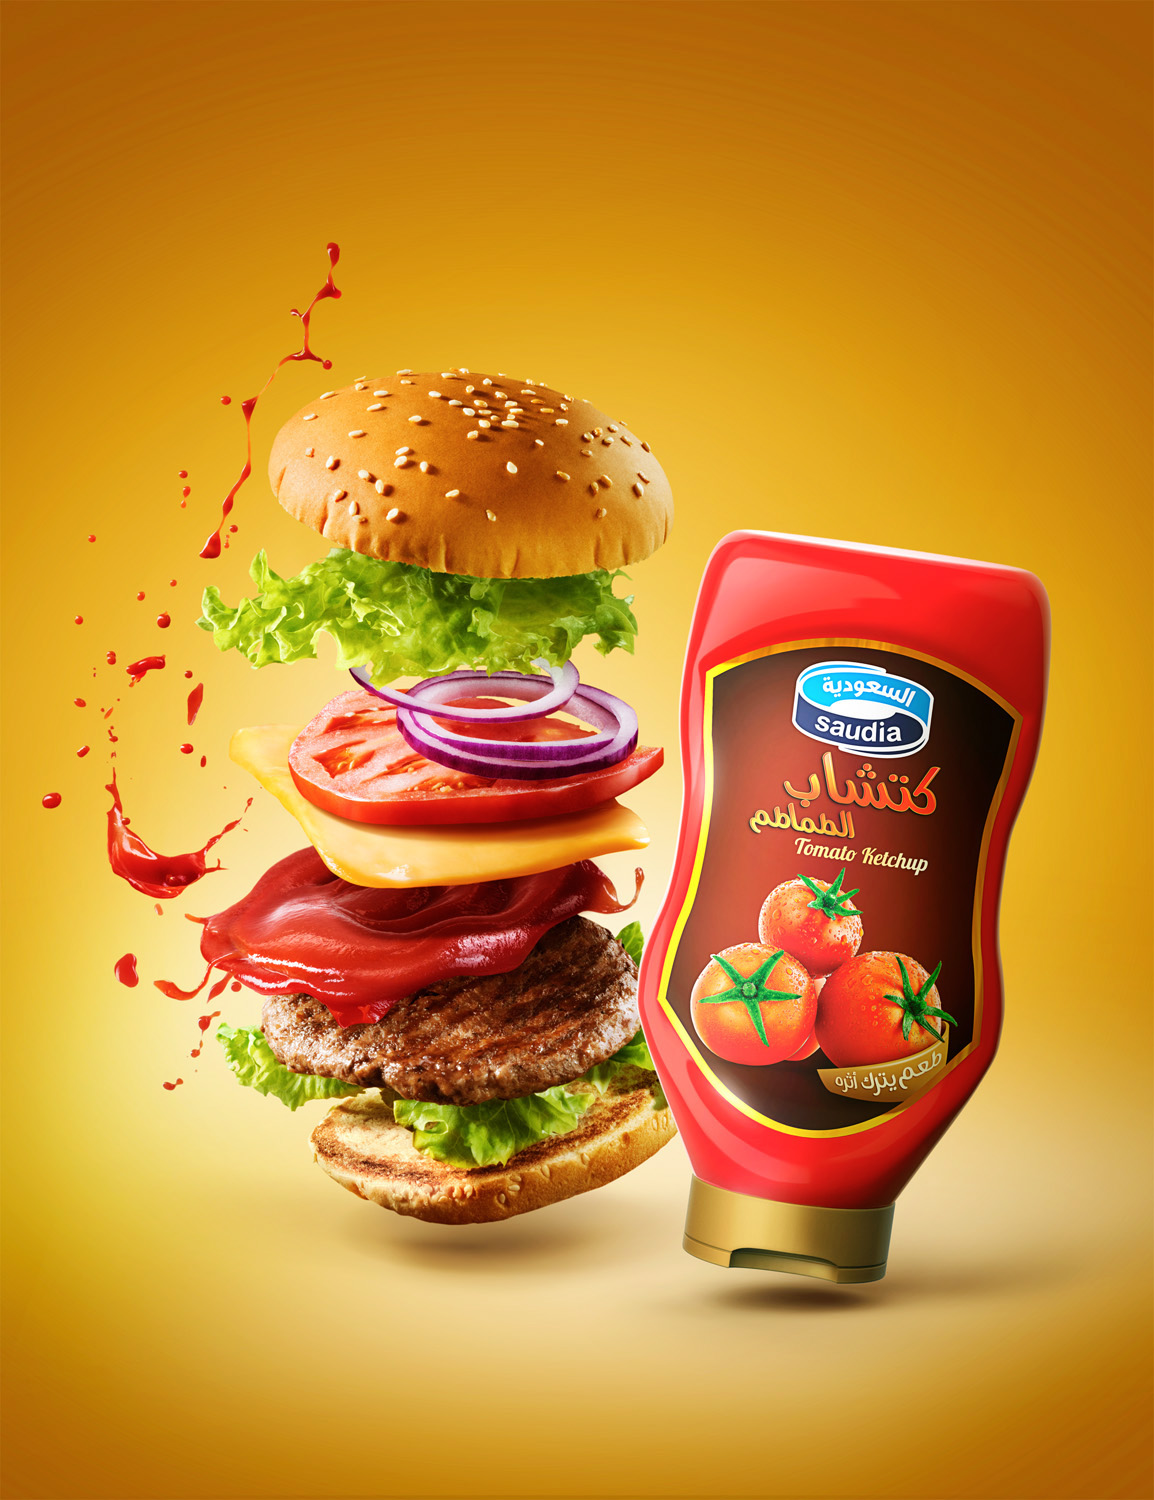 ketchup burger Nuggets Fries saudia Tomato splash Food 